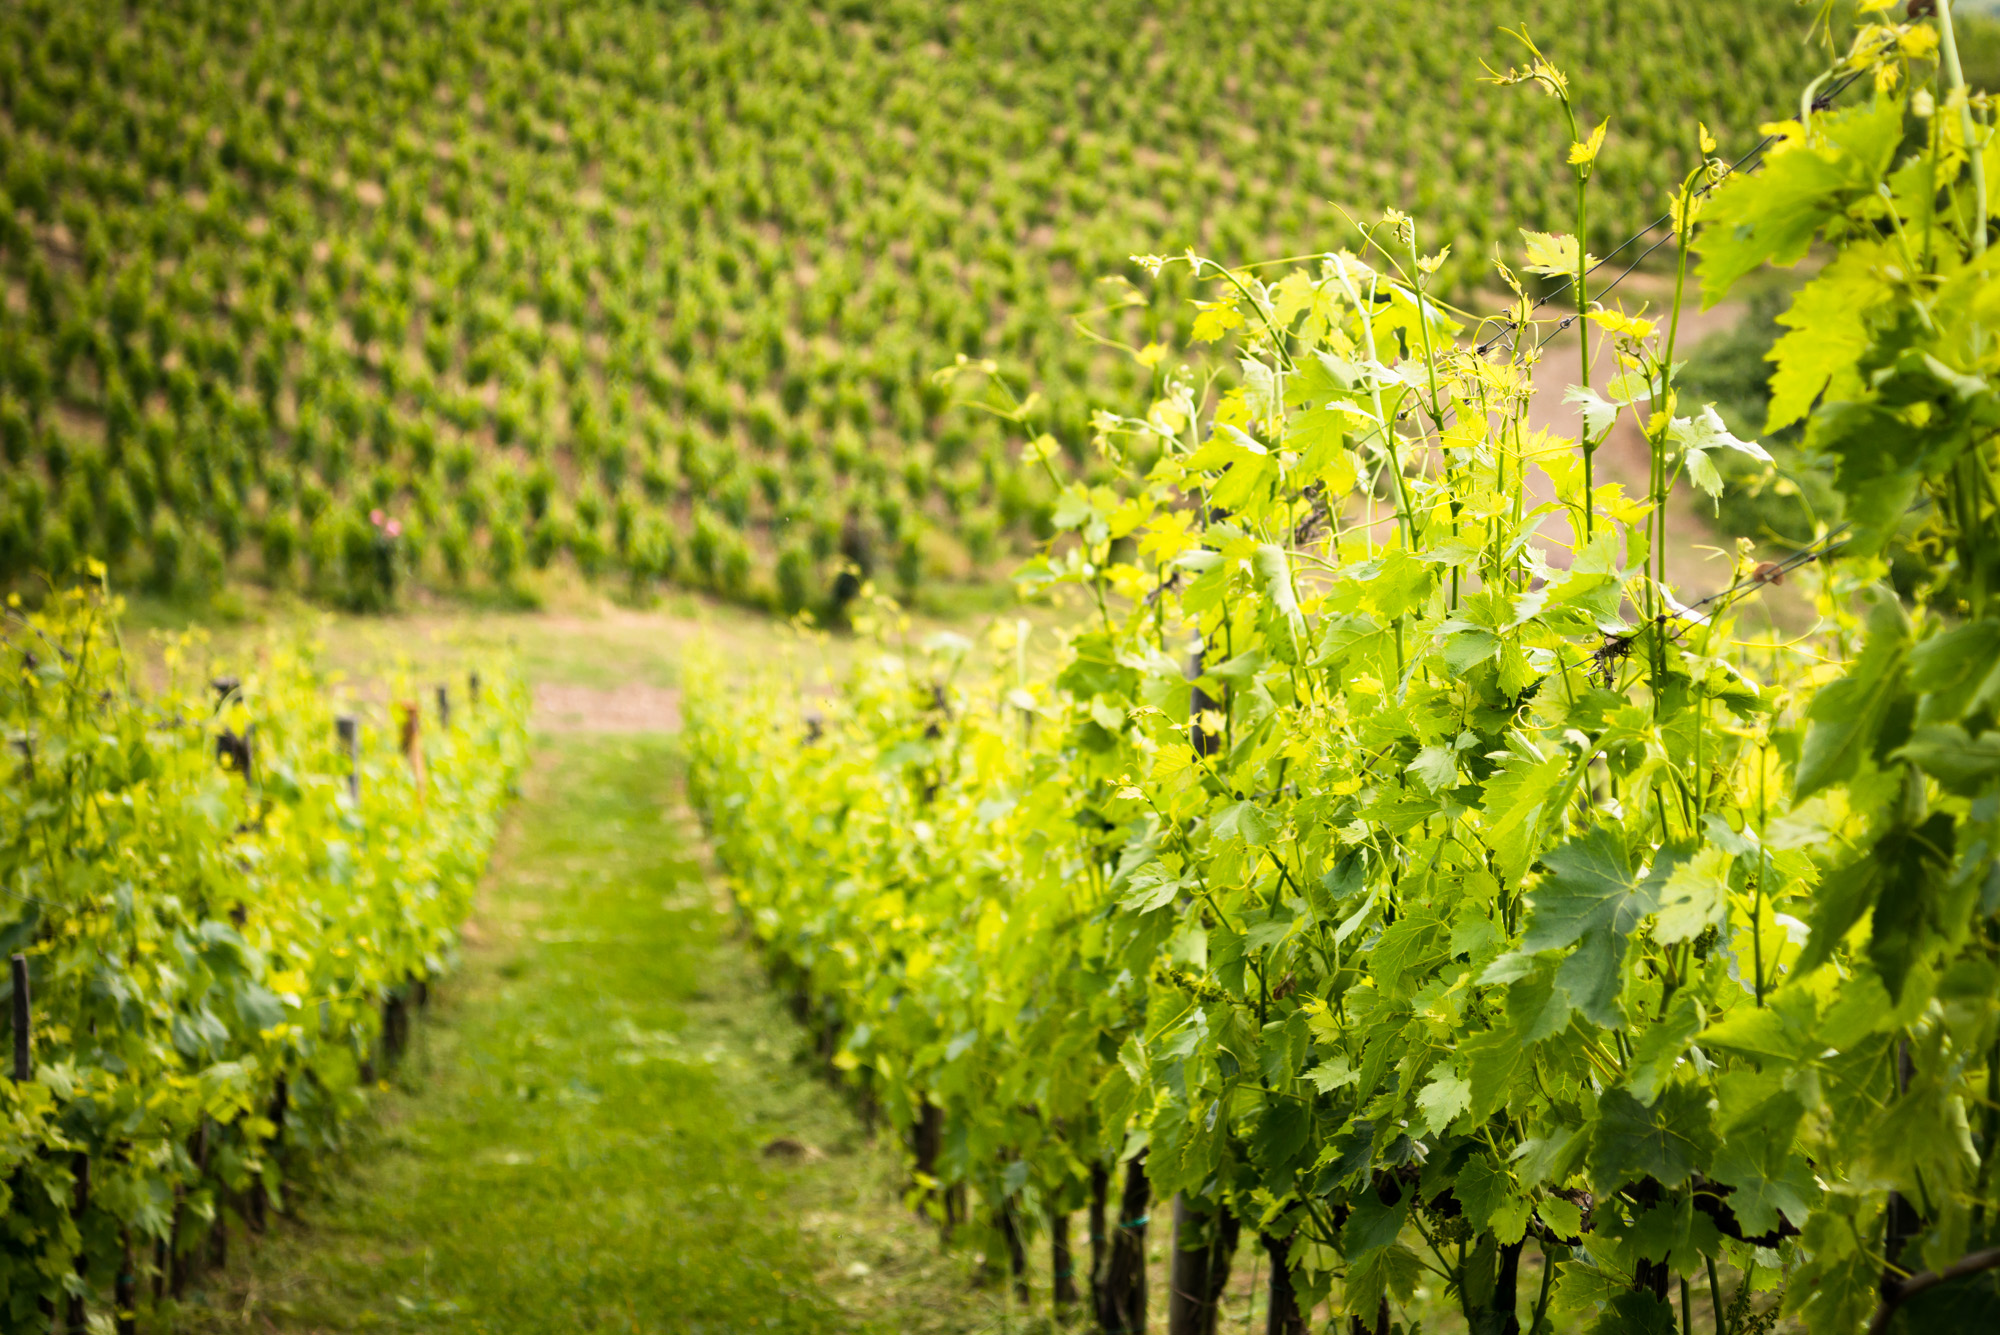 Vineyard at Montemaggio